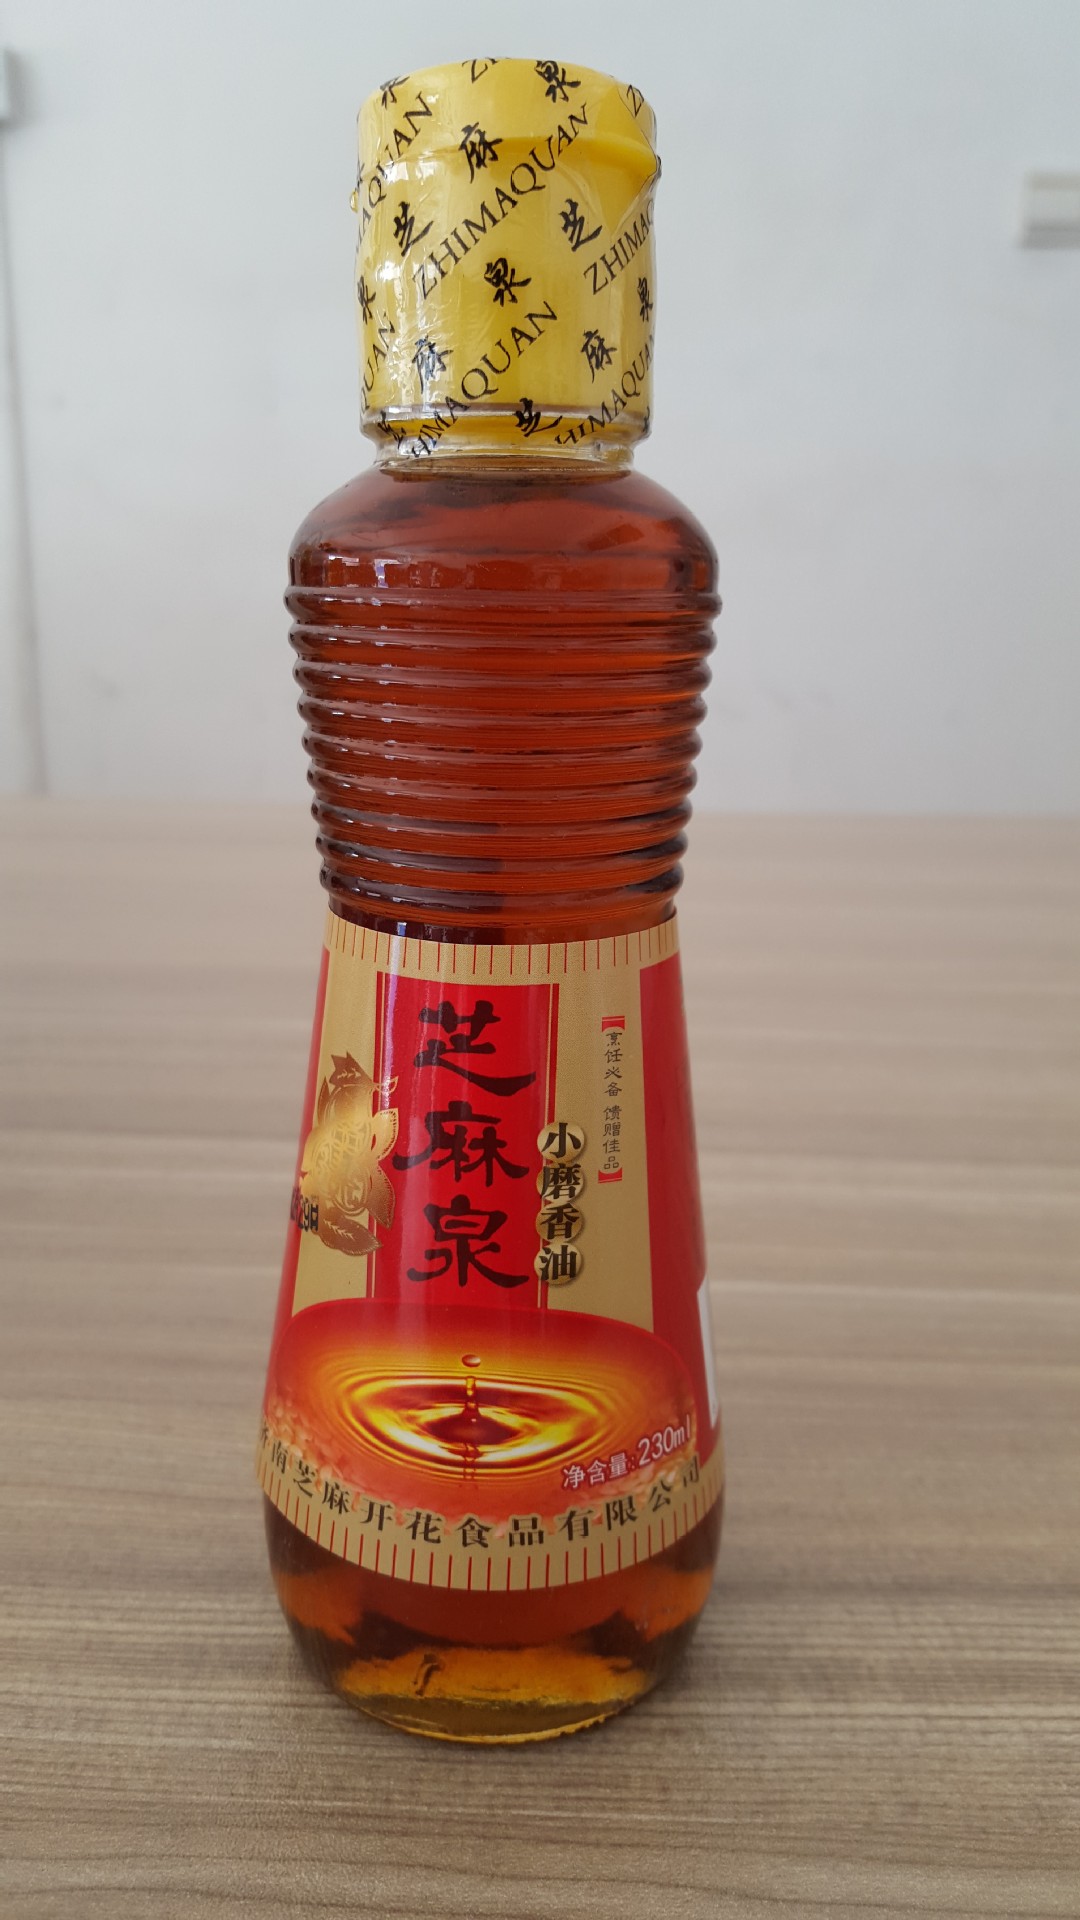 味全 麻油 - 11 fl oz (325 ml) - Well Come Asian Market